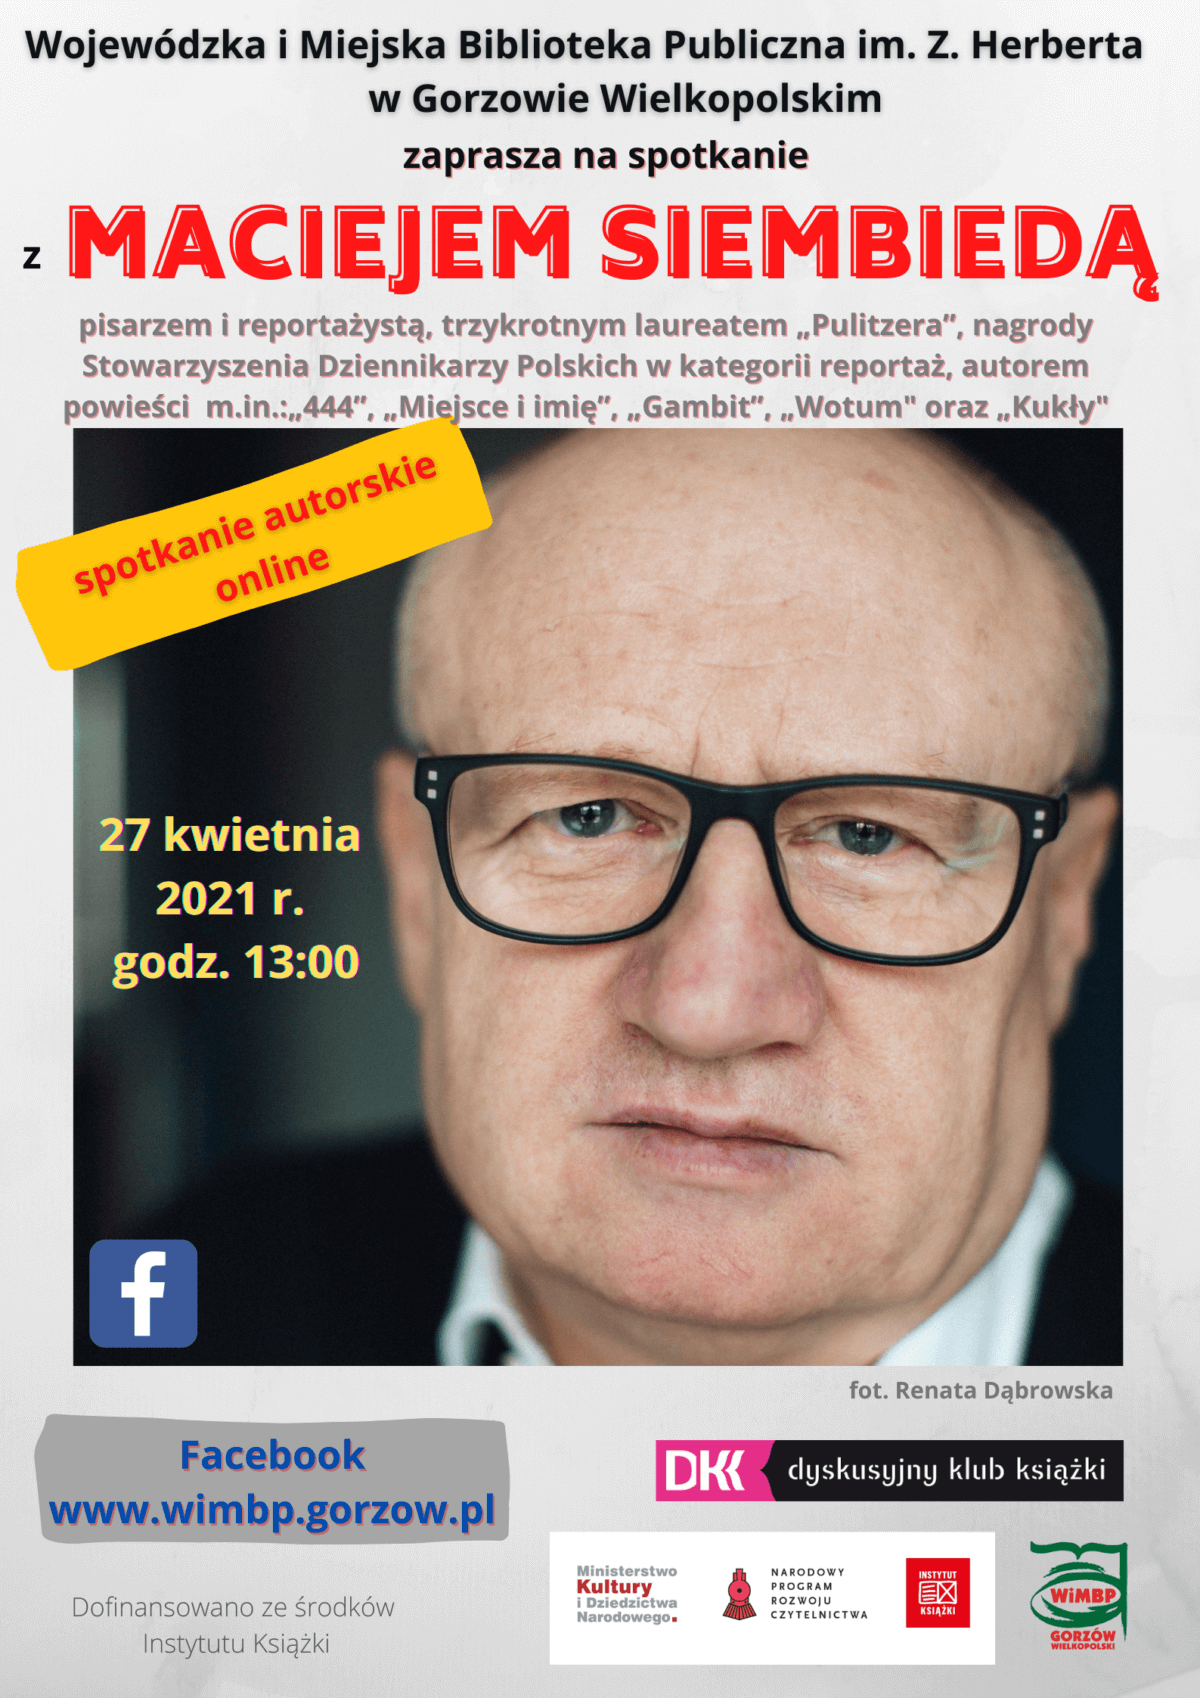 27 kwietnia 2021 o godzinie 13:00 zapraszamy na spotkanie z Maciejem Siembiedą, pisarzem i reportażystą, laureatem nagrody Pulitzera. Wydarzenie online dostępne na Facebooku WIMBP.